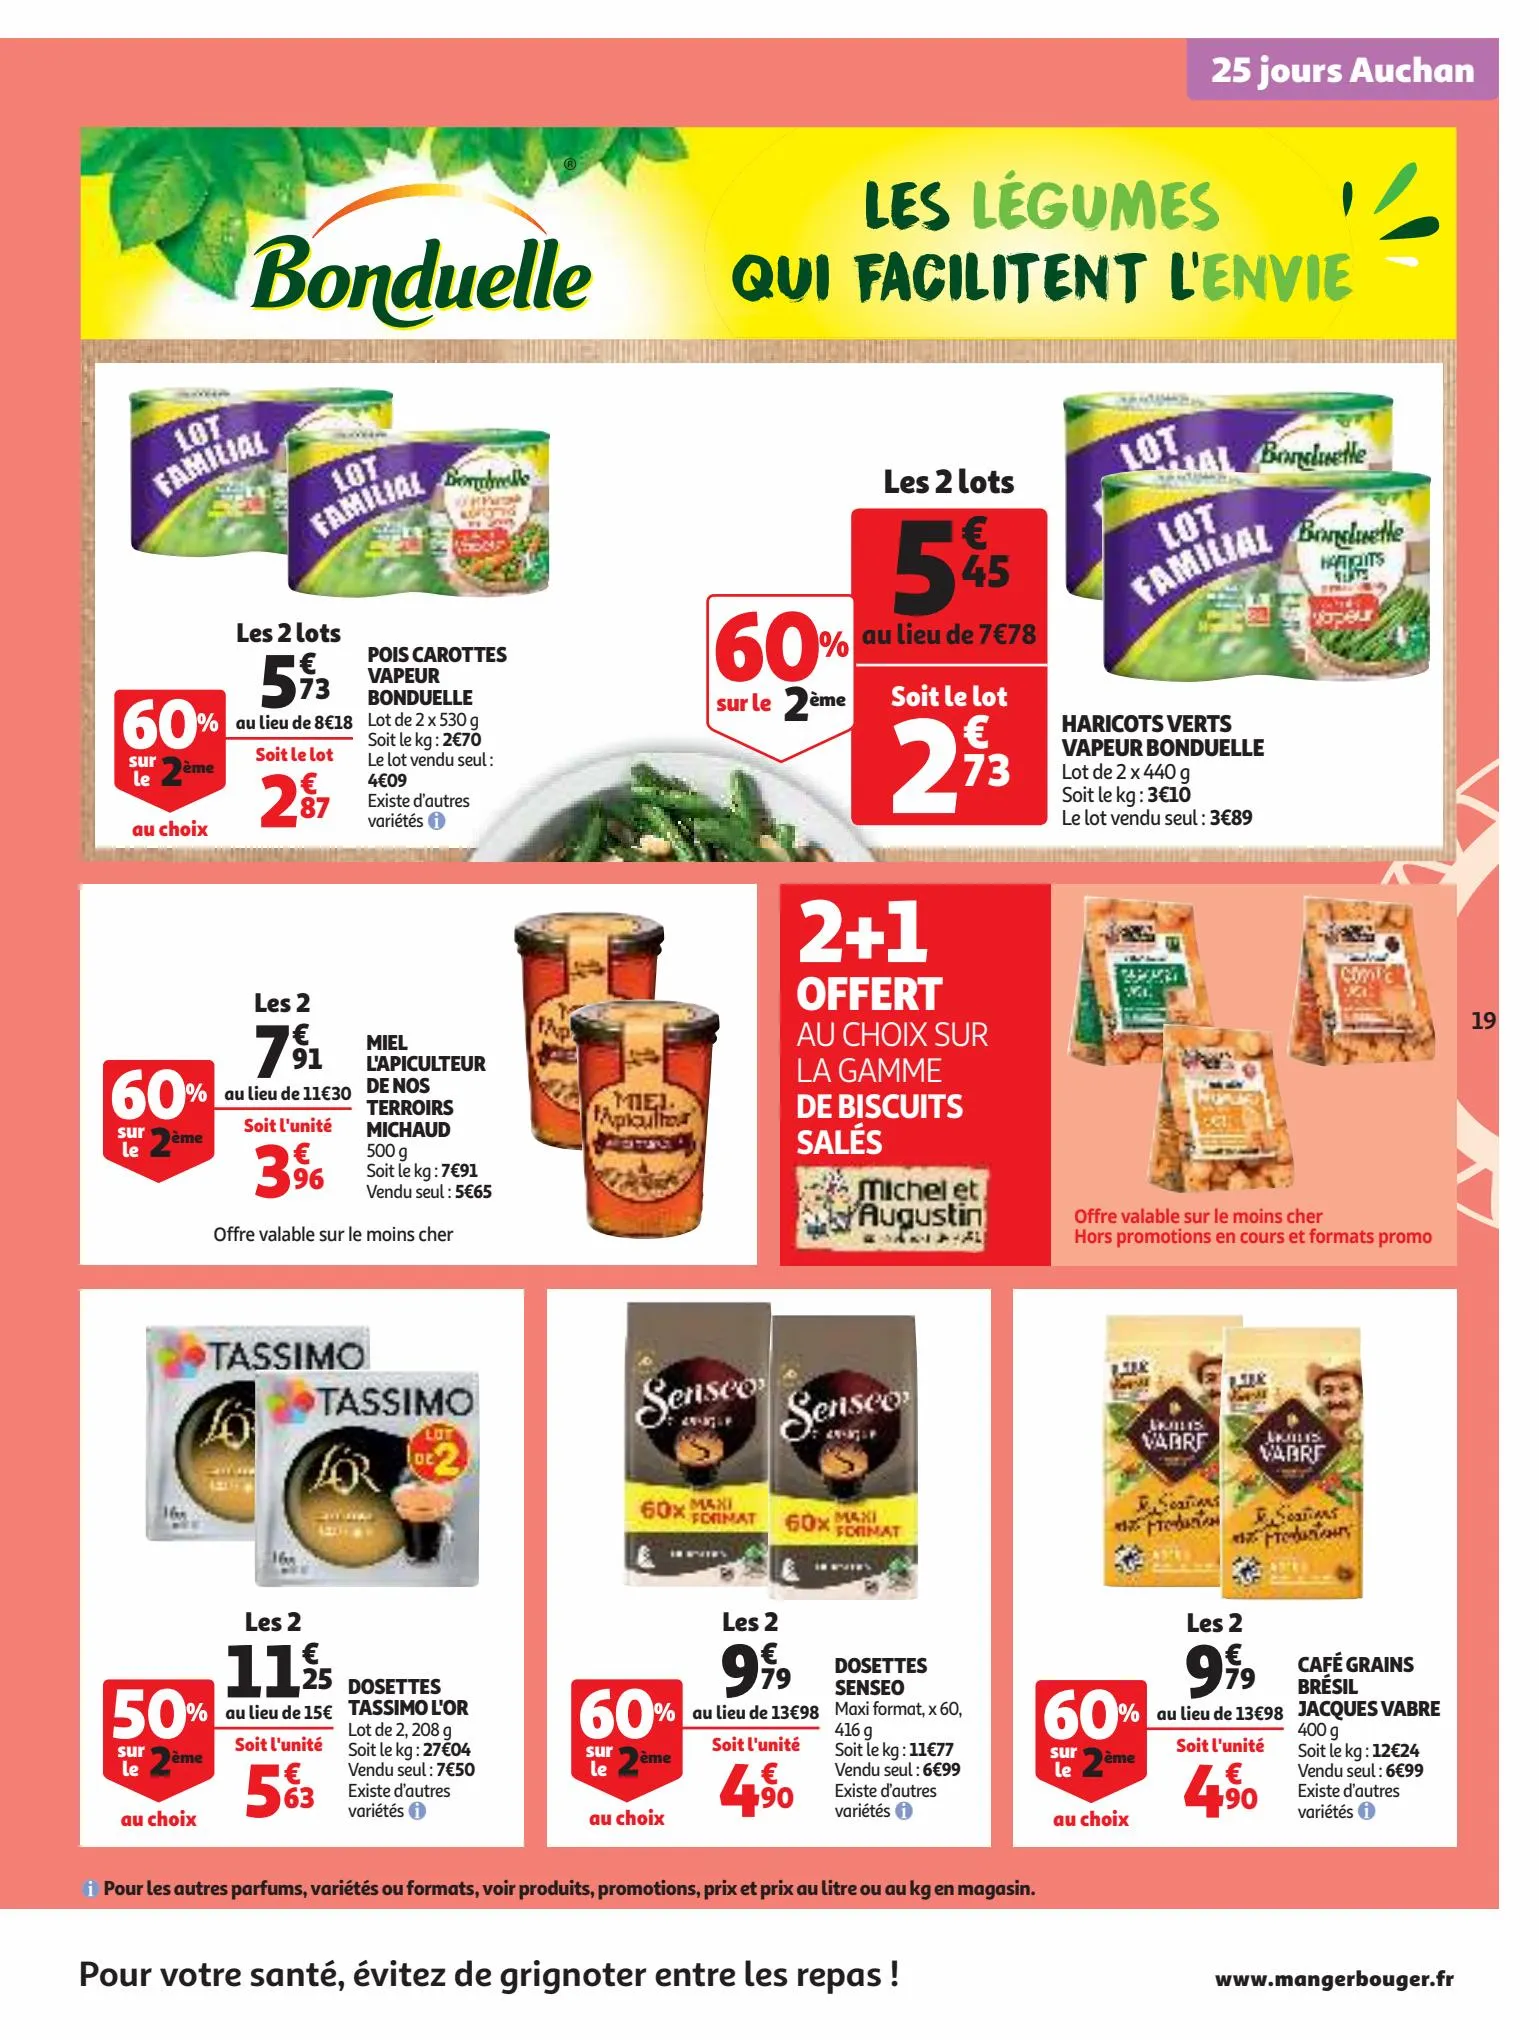 Catalogue 25 Jours Auchan, page 00019